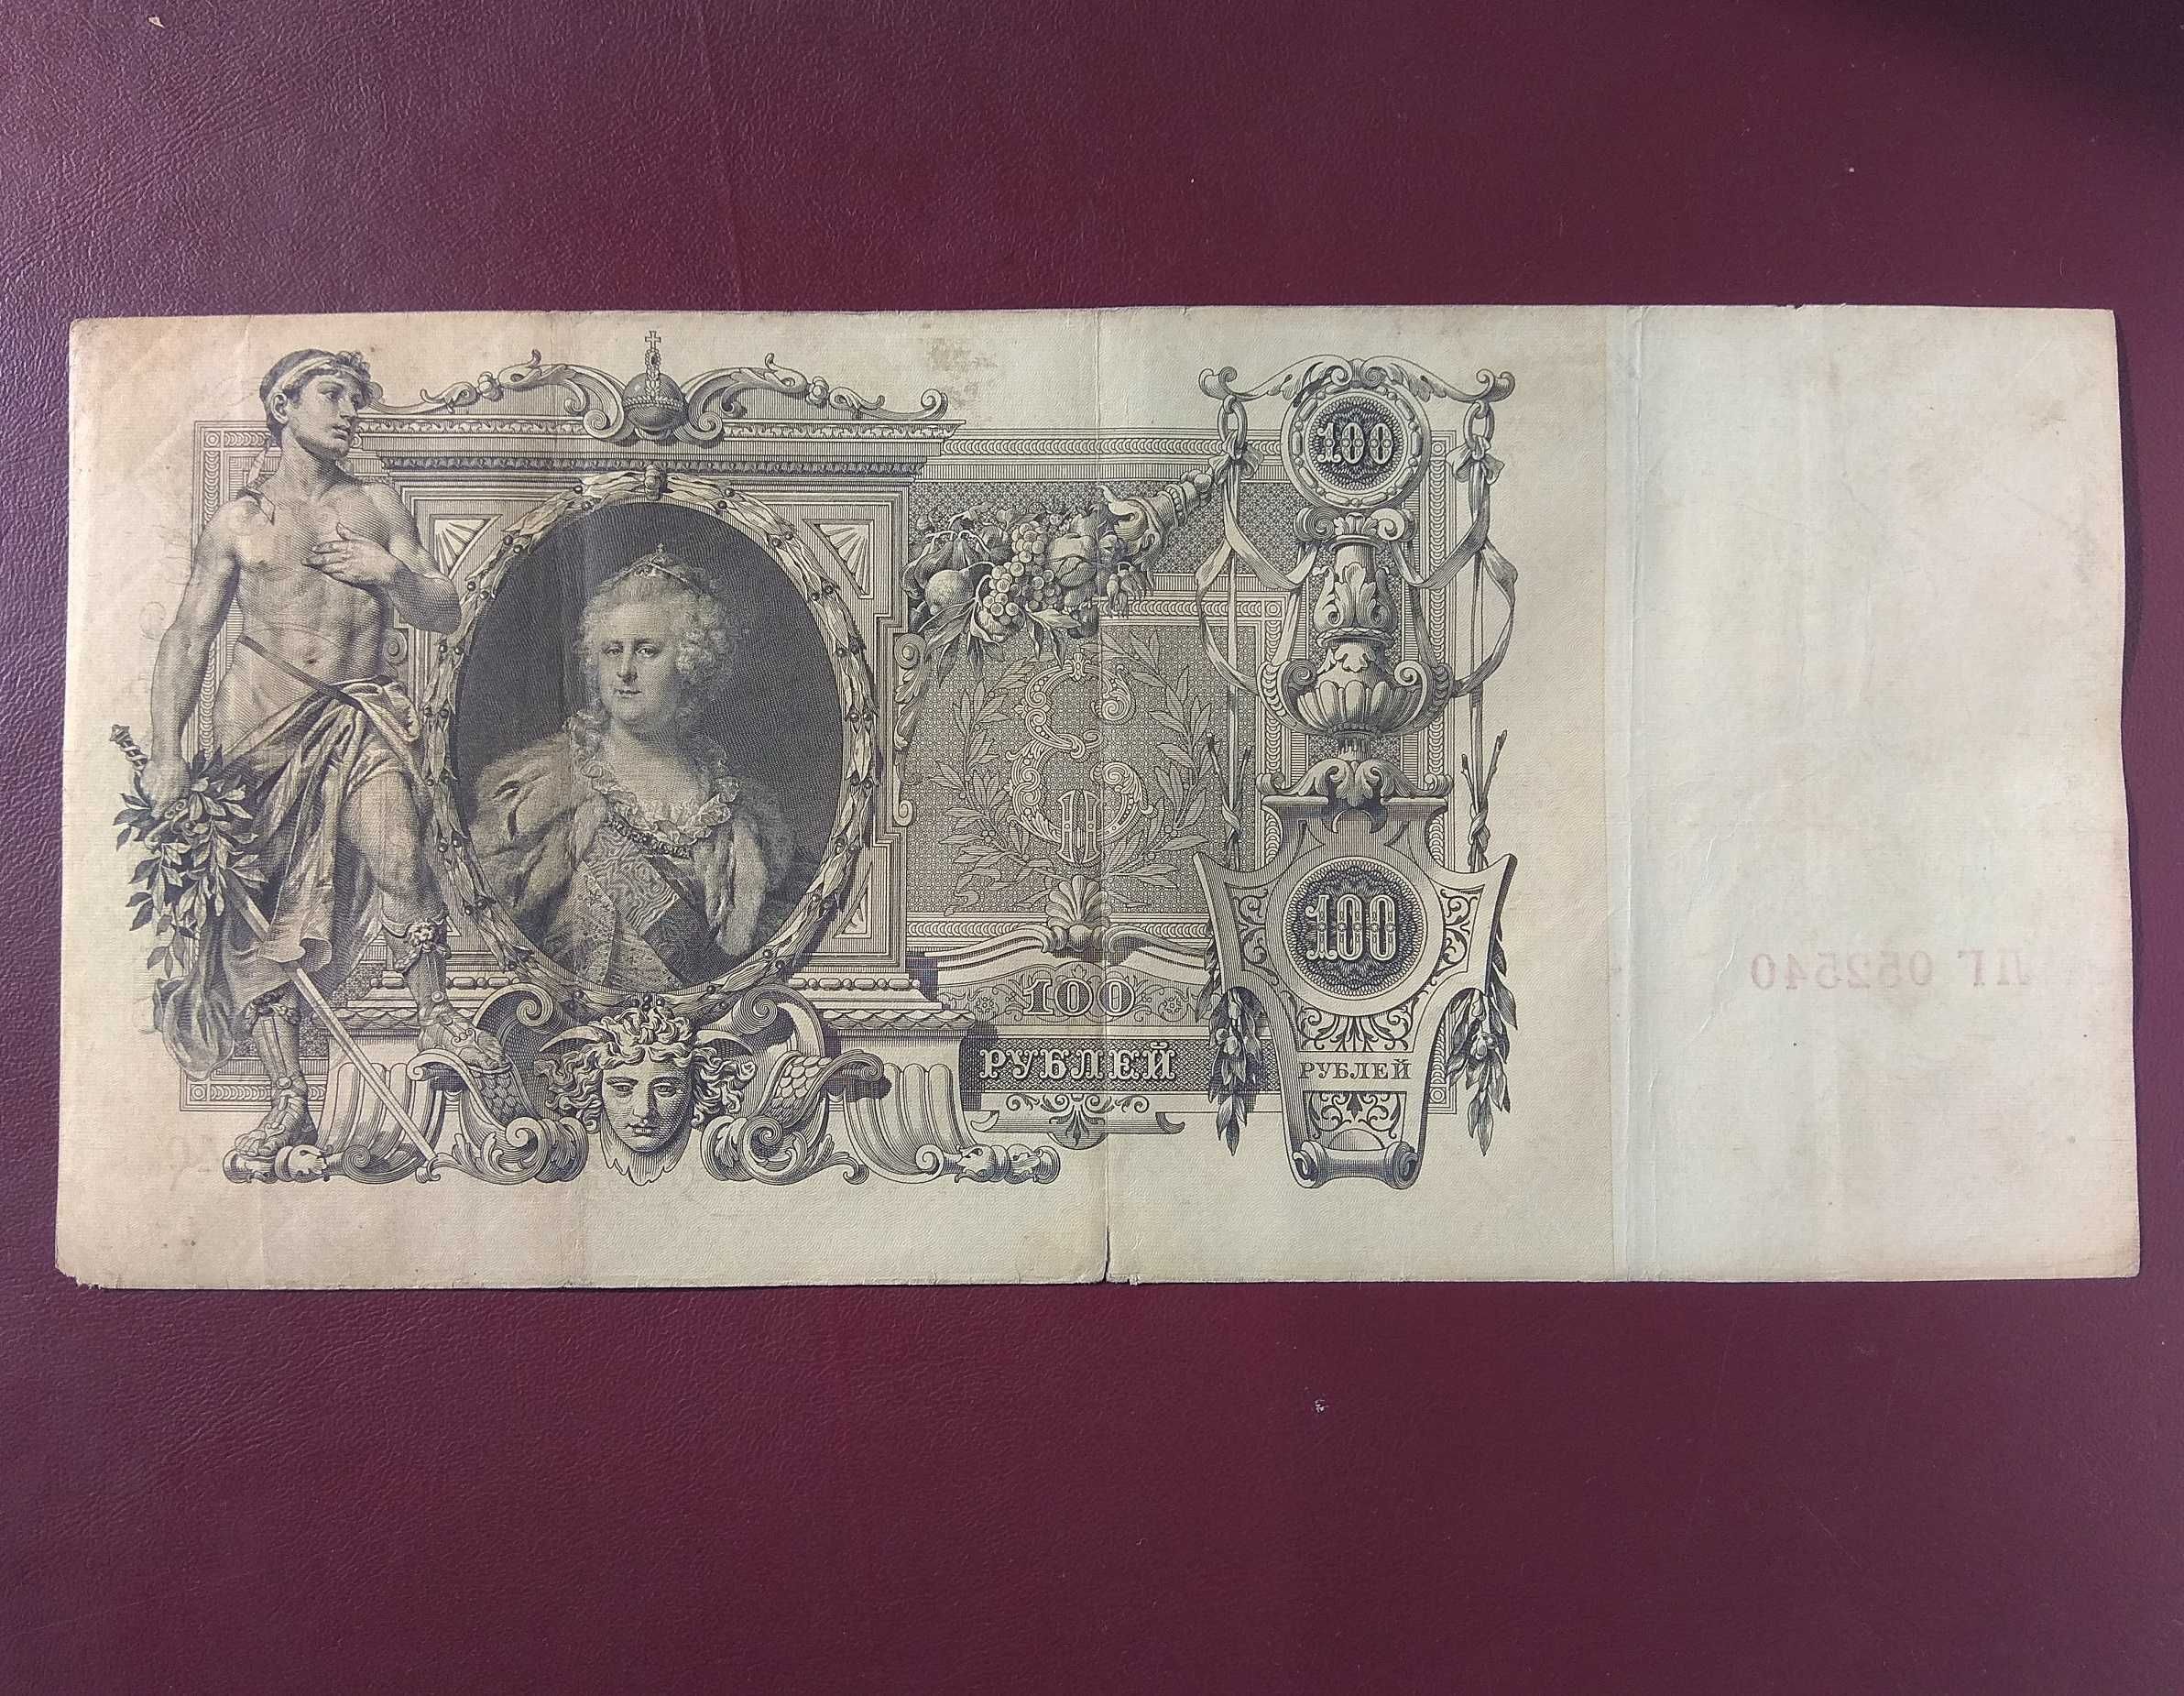 100 рублей 1910 года